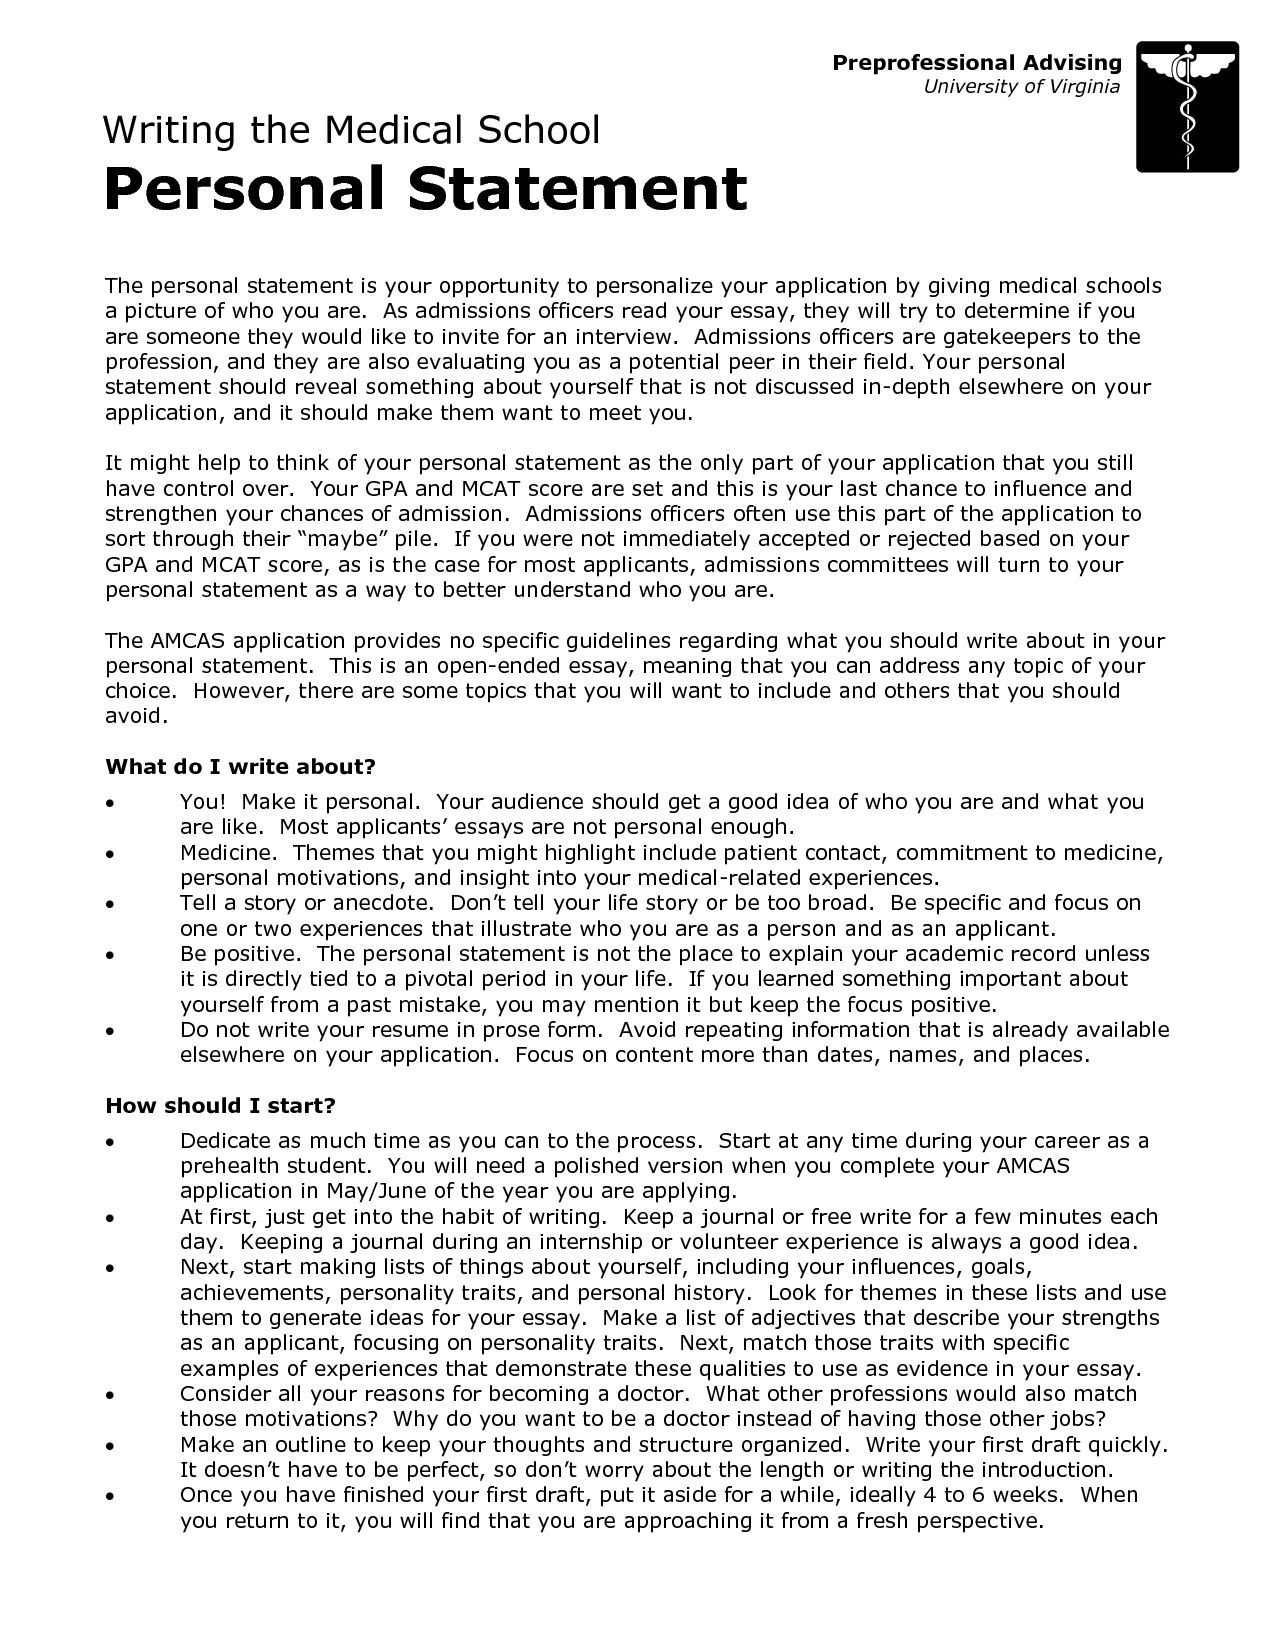 University personal statement